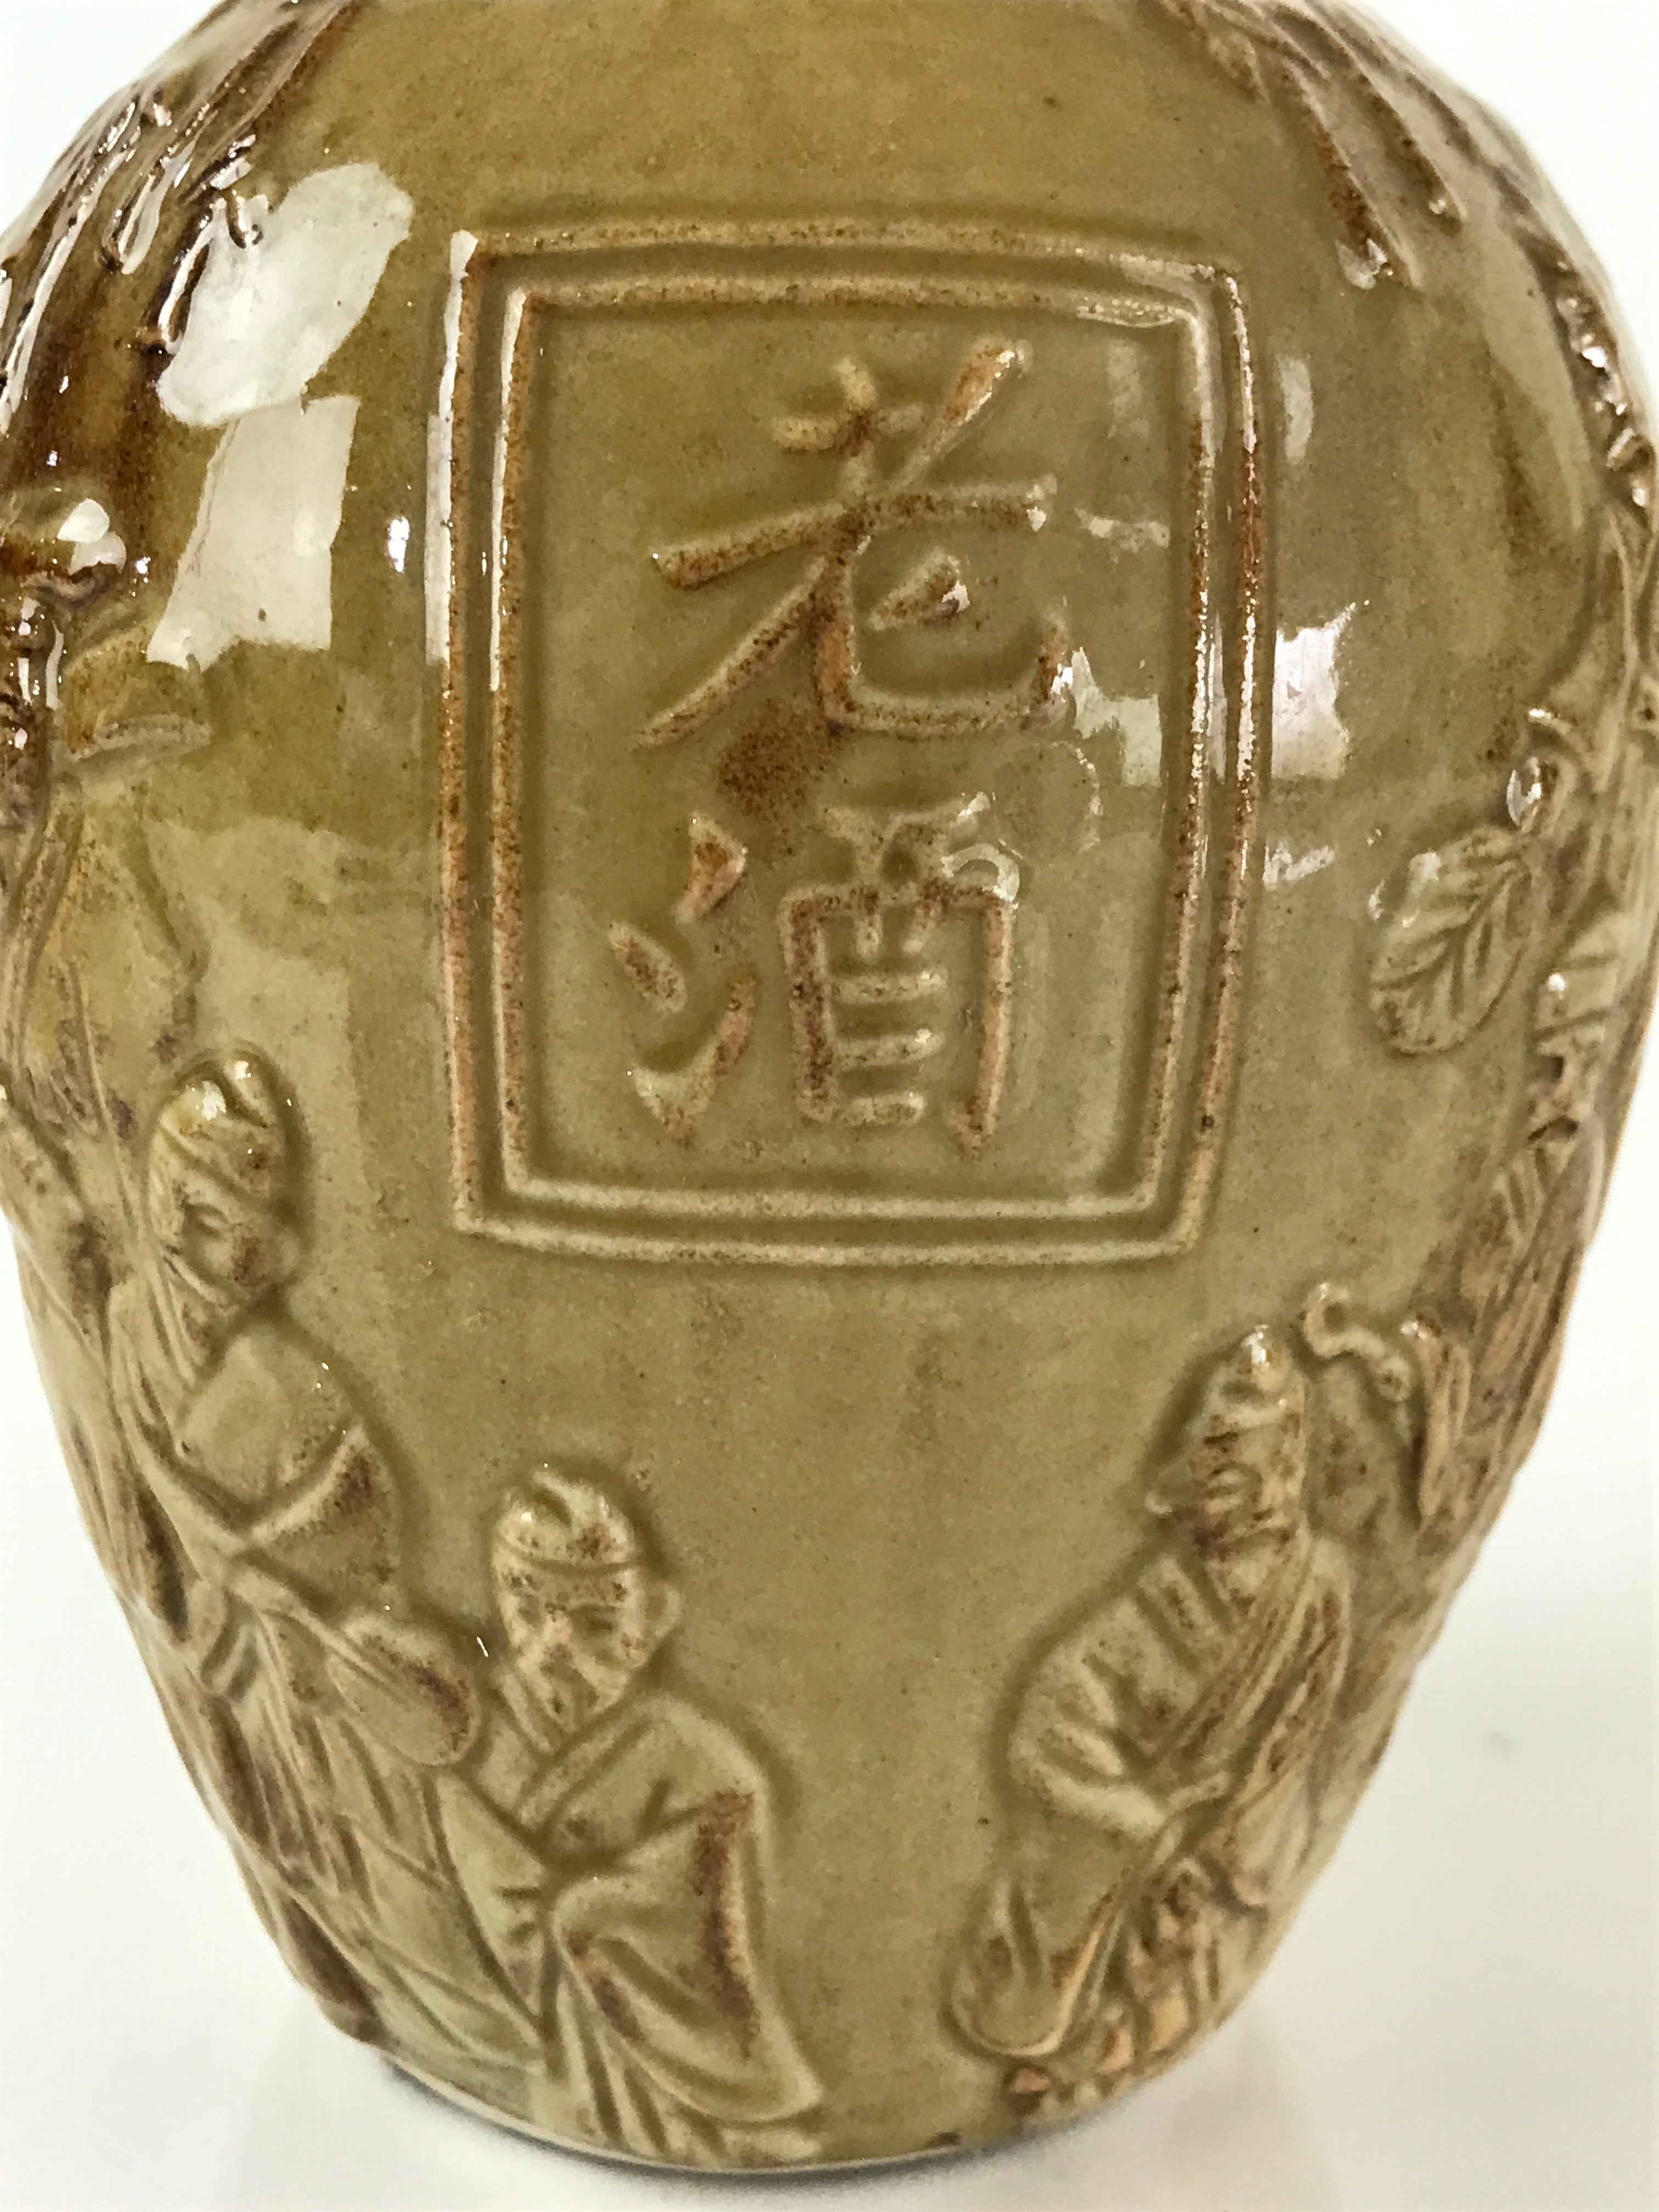 Japanese Ceramic Sake Bottle Vtg Pottery Seven Wise Men Eishogen TS458